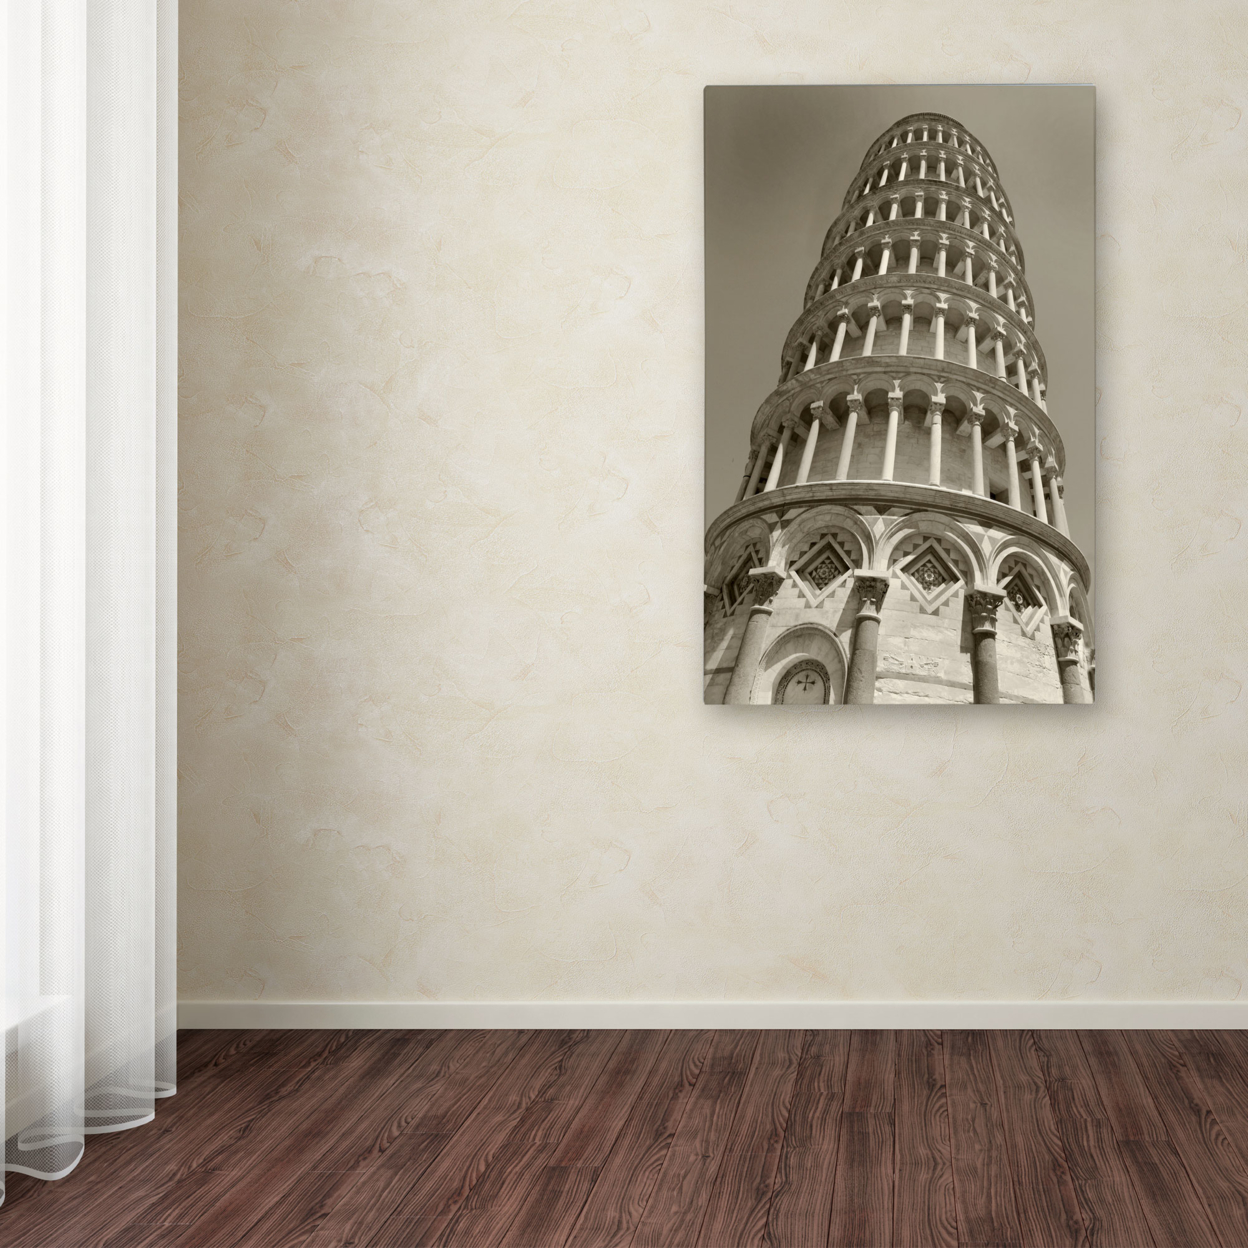 Chris Bliss 'Pisa Tower II' Canvas Art 16 X 24